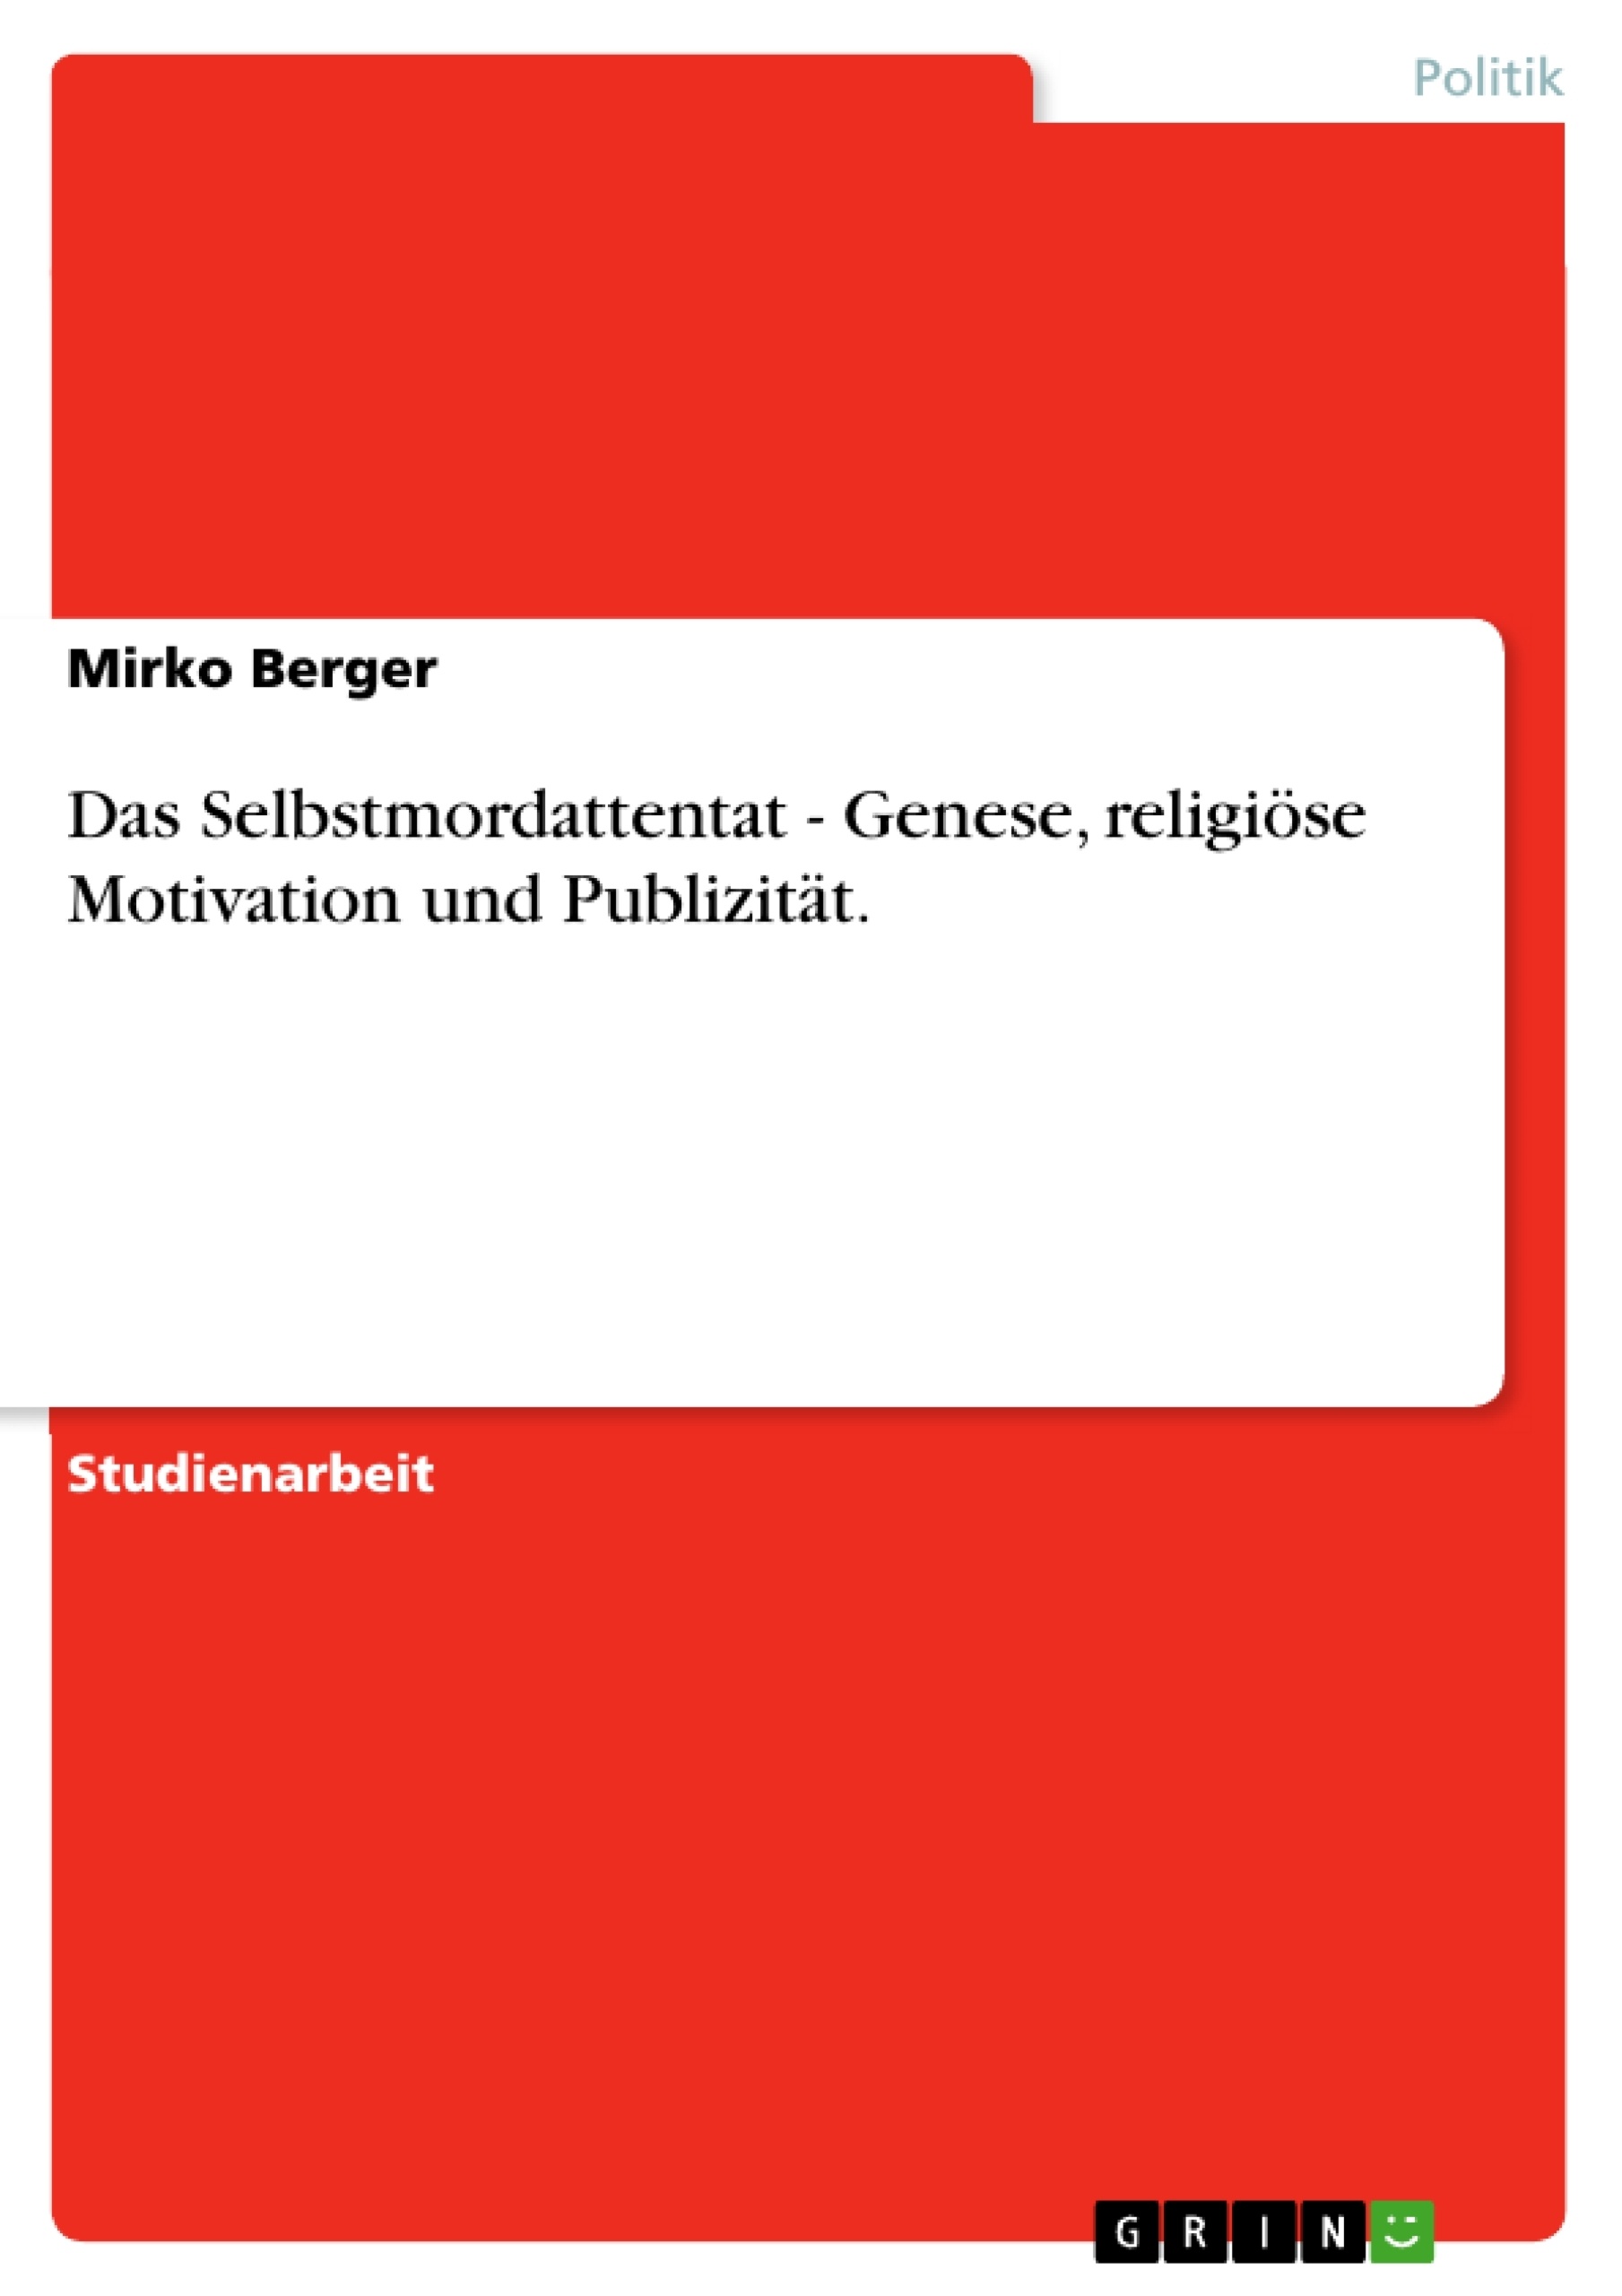 Title: Das Selbstmordattentat - Genese, religiöse Motivation und Publizität.